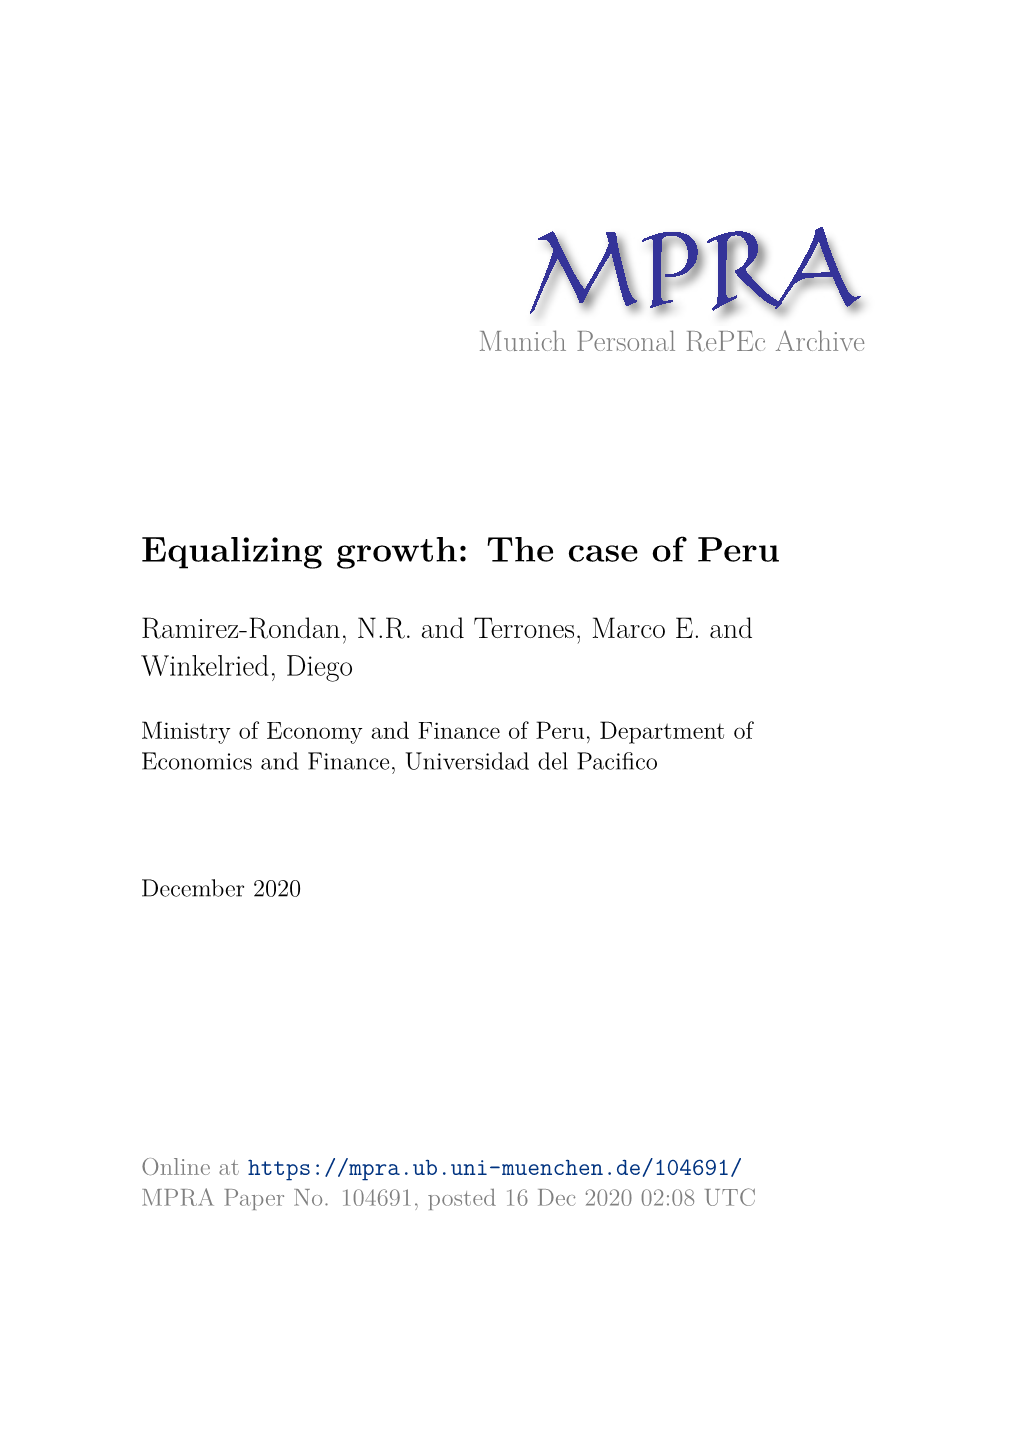 The Case of Peru